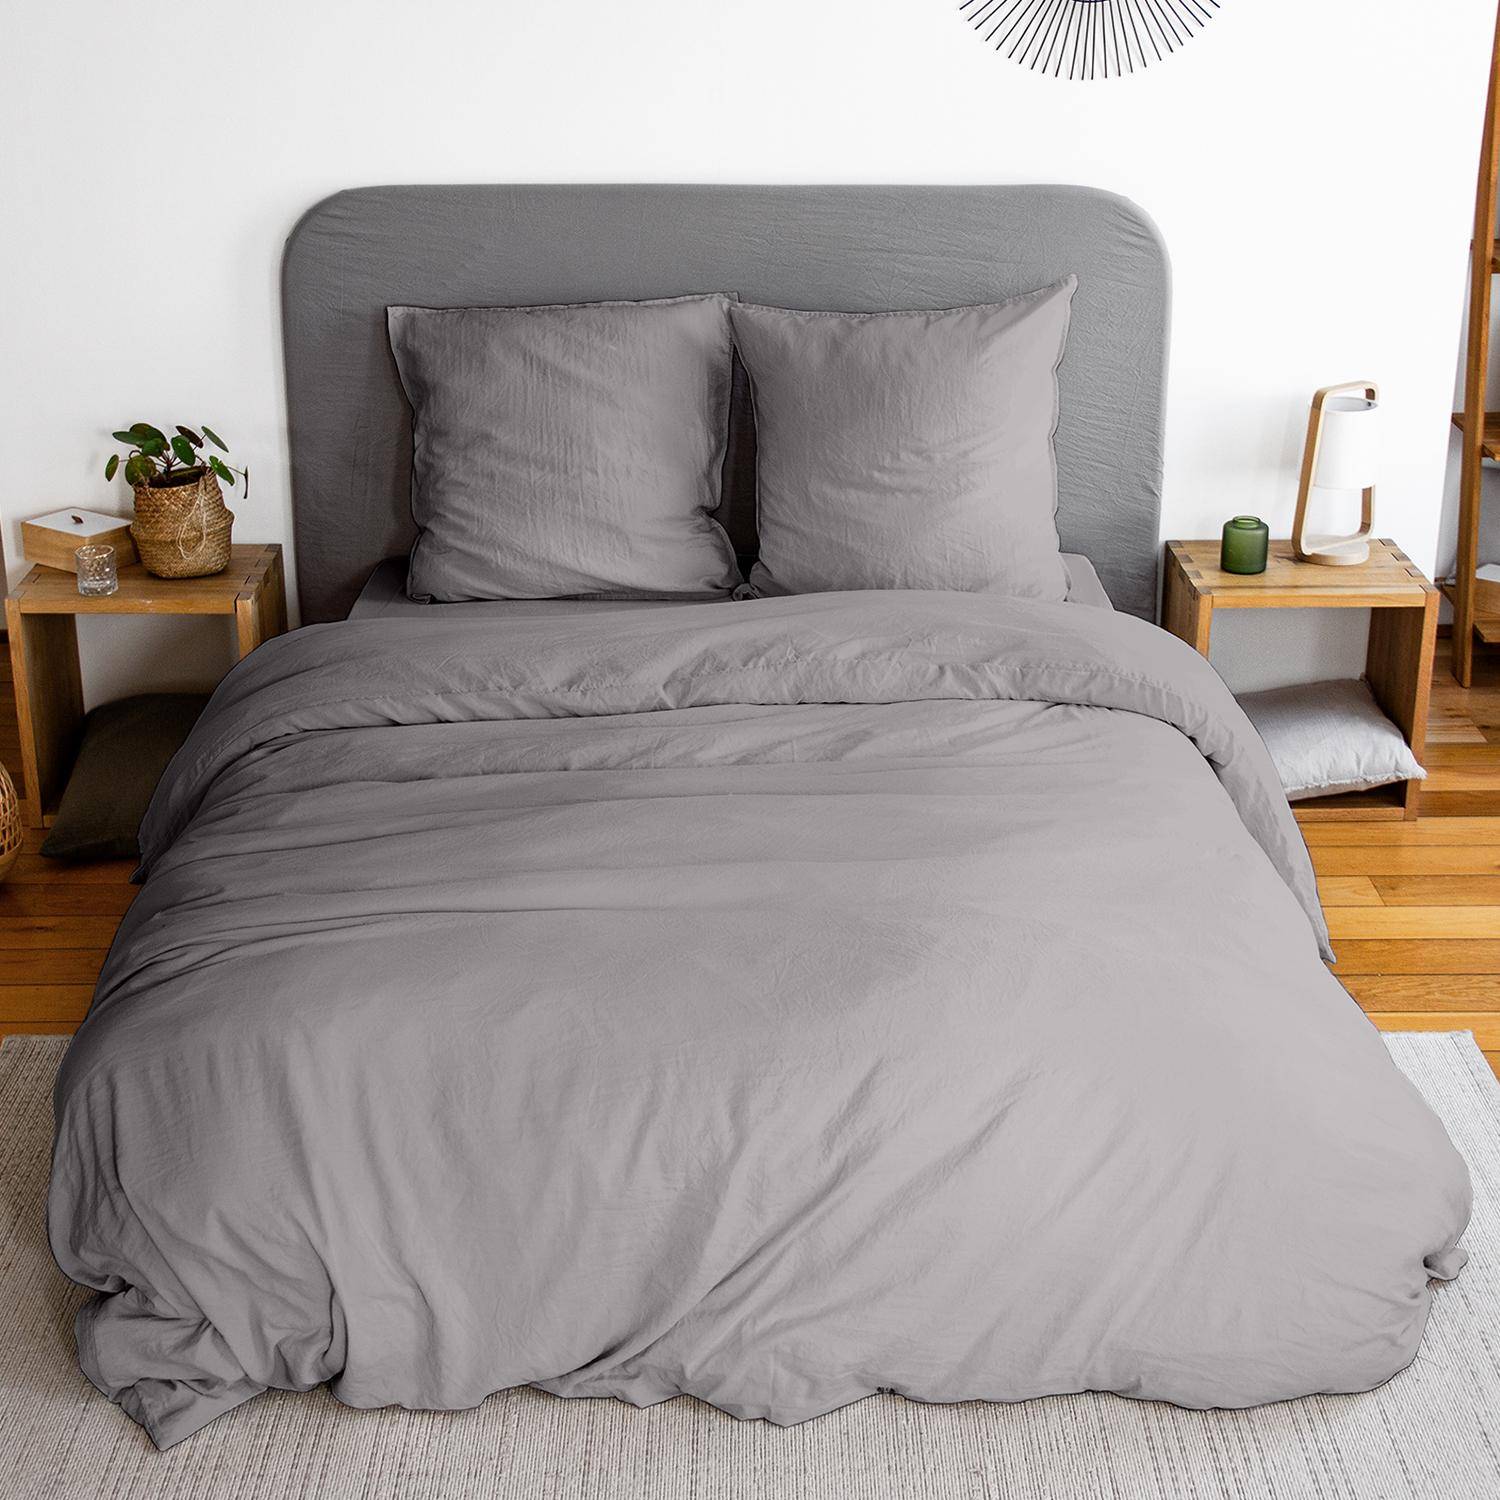 Parure de lit en microfibre lavée anthracite 260 x 240cm pour lit 2 places avec 1 housse de couette et 2 taies d'oreillers,sweeek,Photo1